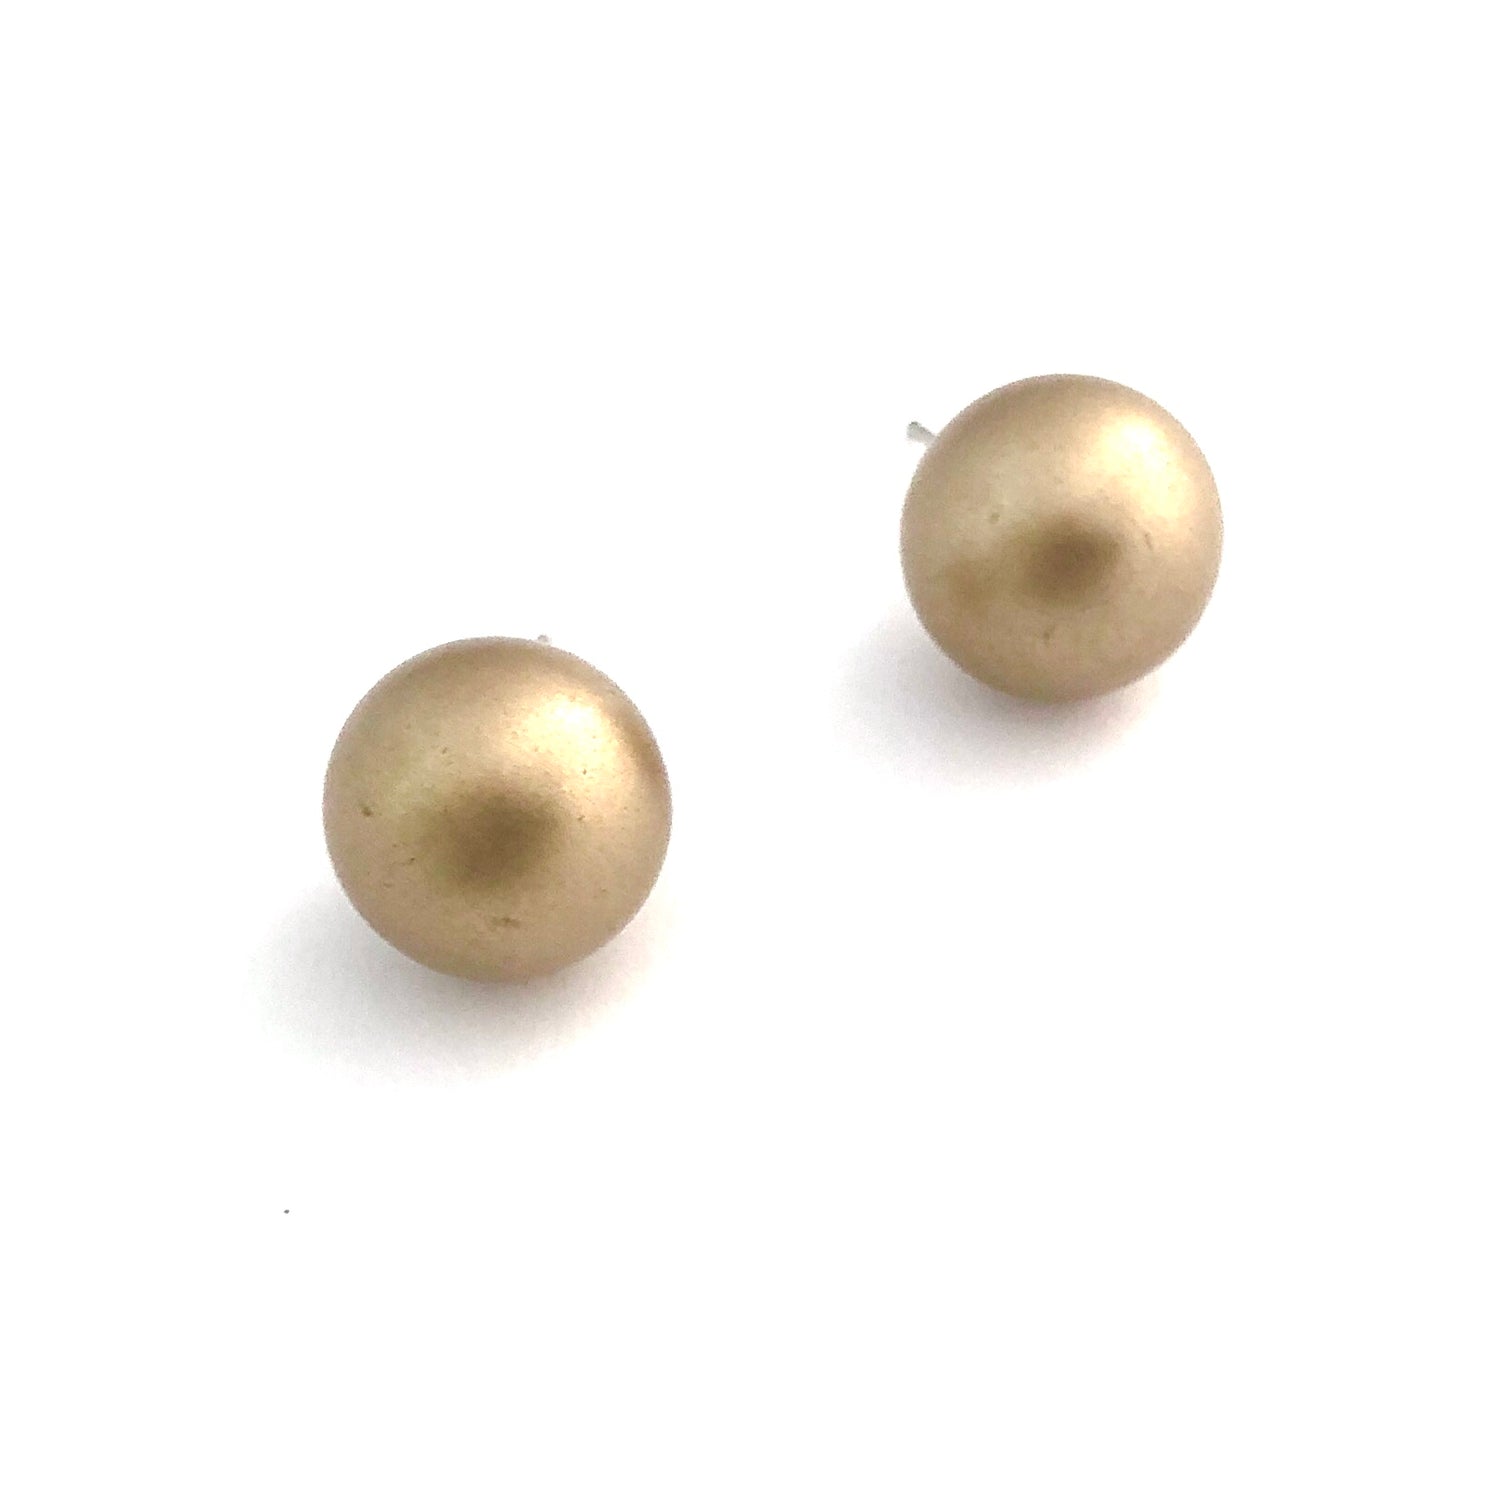 jumbo ball earrings